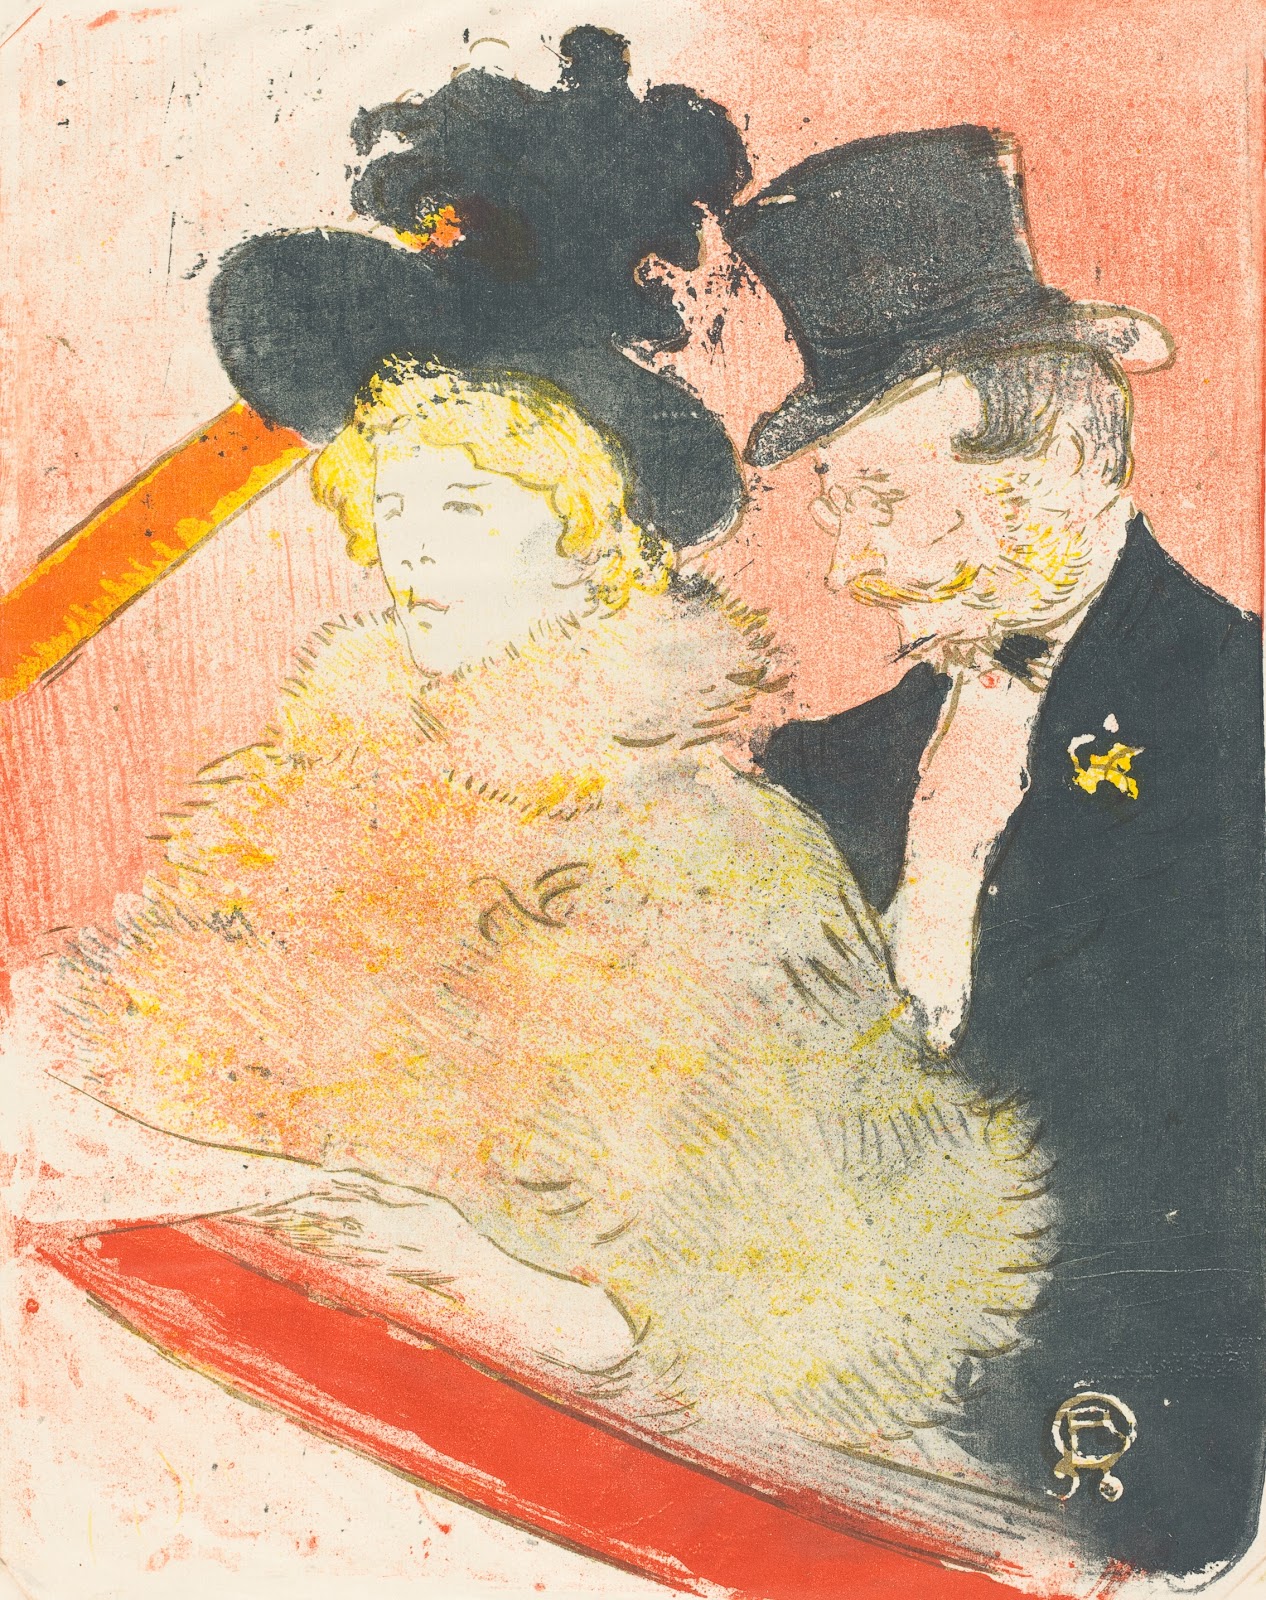 Henri+de+Toulouse+Lautrec-1864-1901 (20).jpg